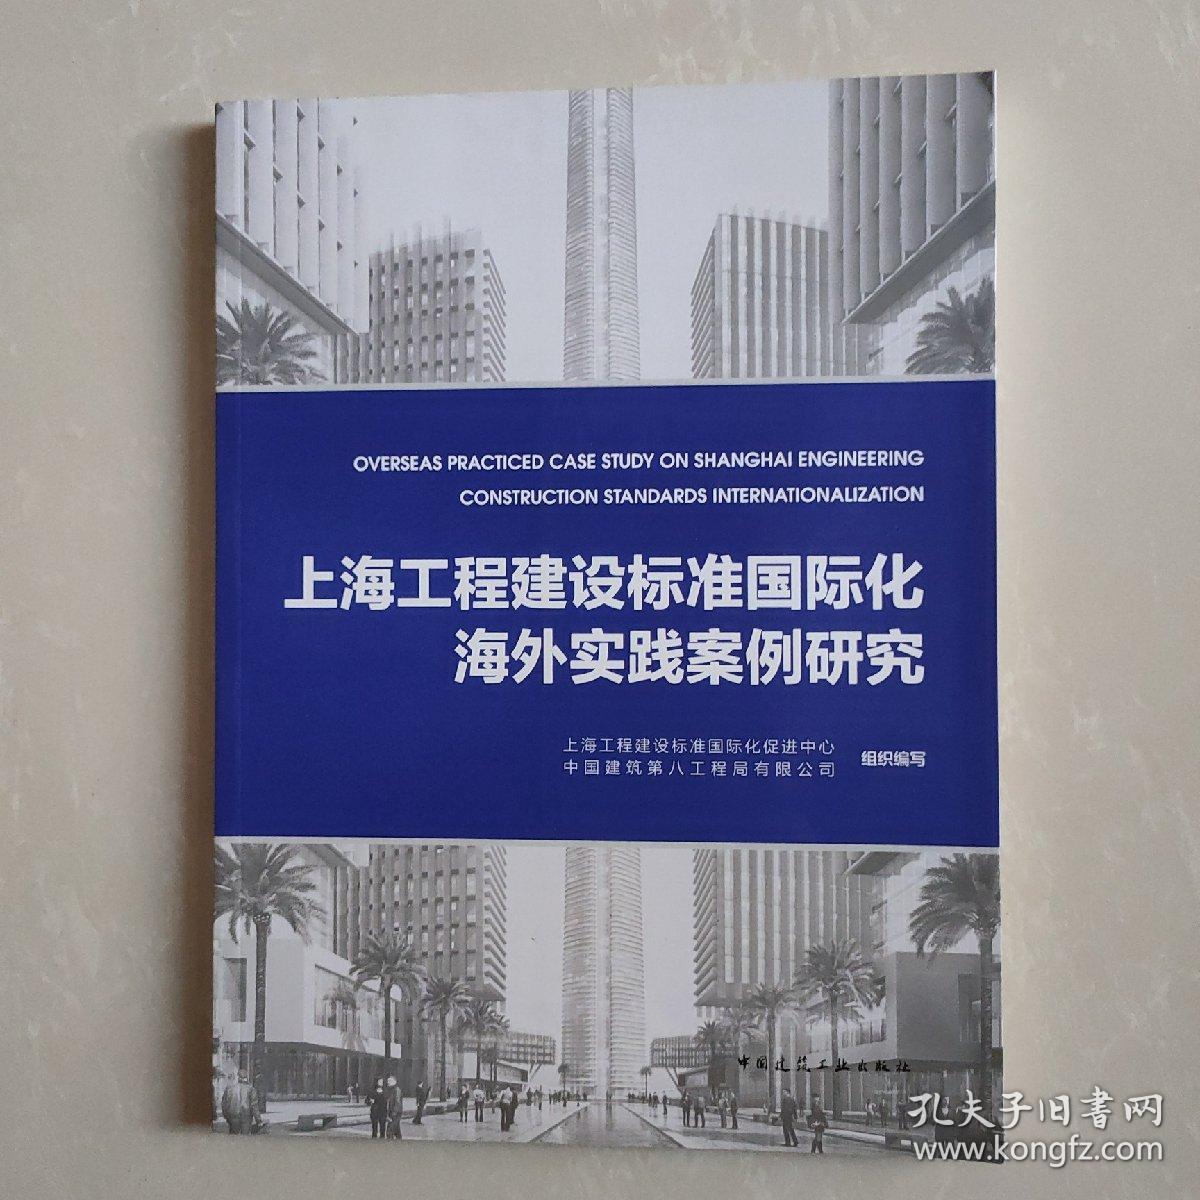 上海工程建设标准国际化海外实践案例研究